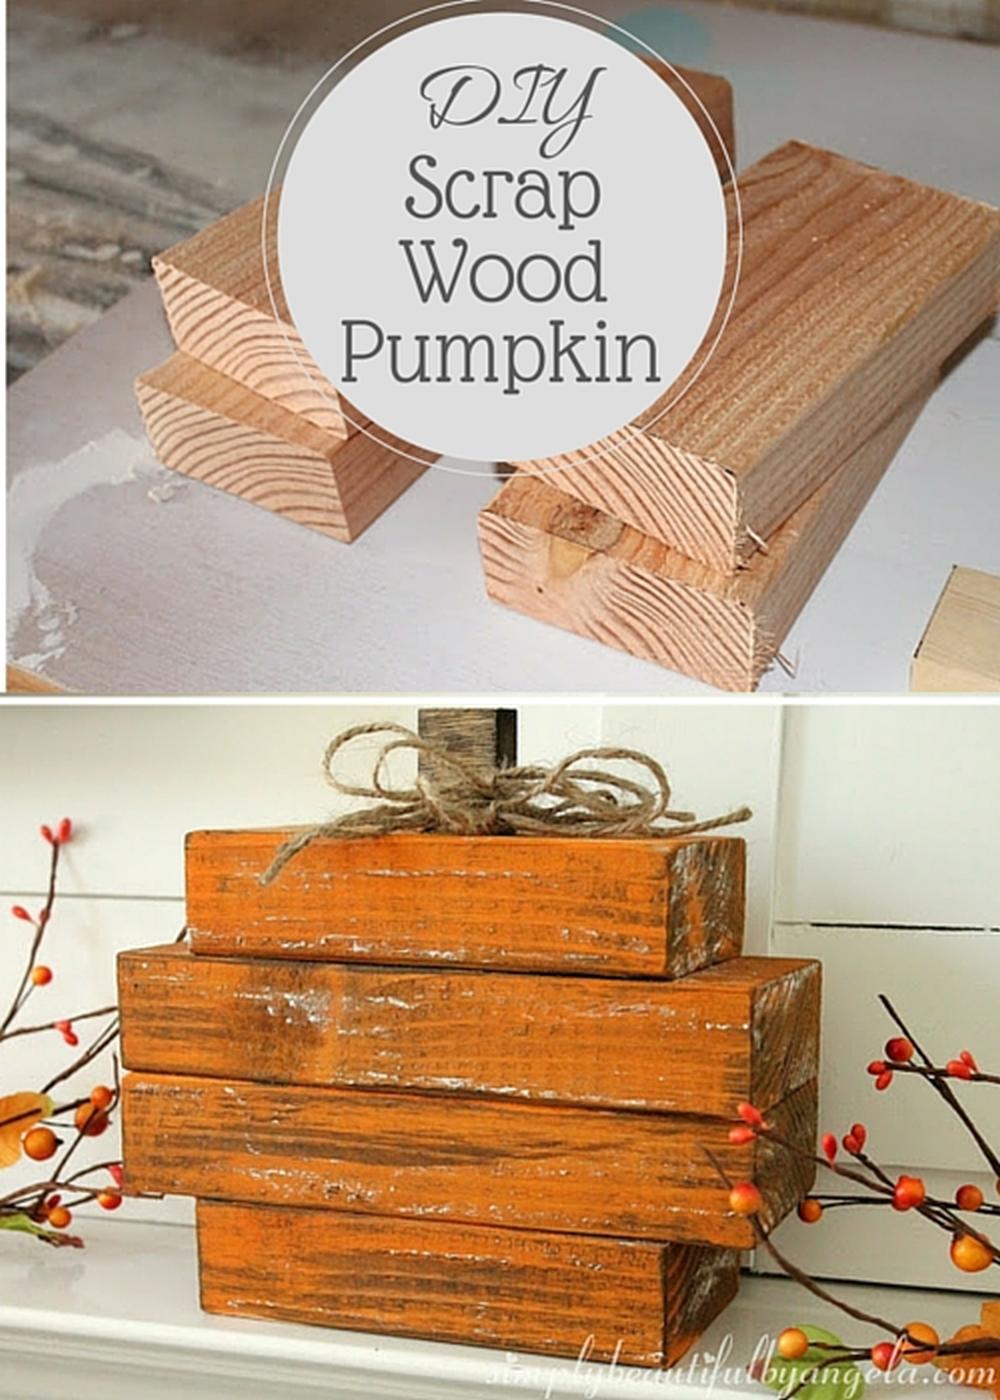 Scrap wood pumpkin thanksgiving centerpiece ideas